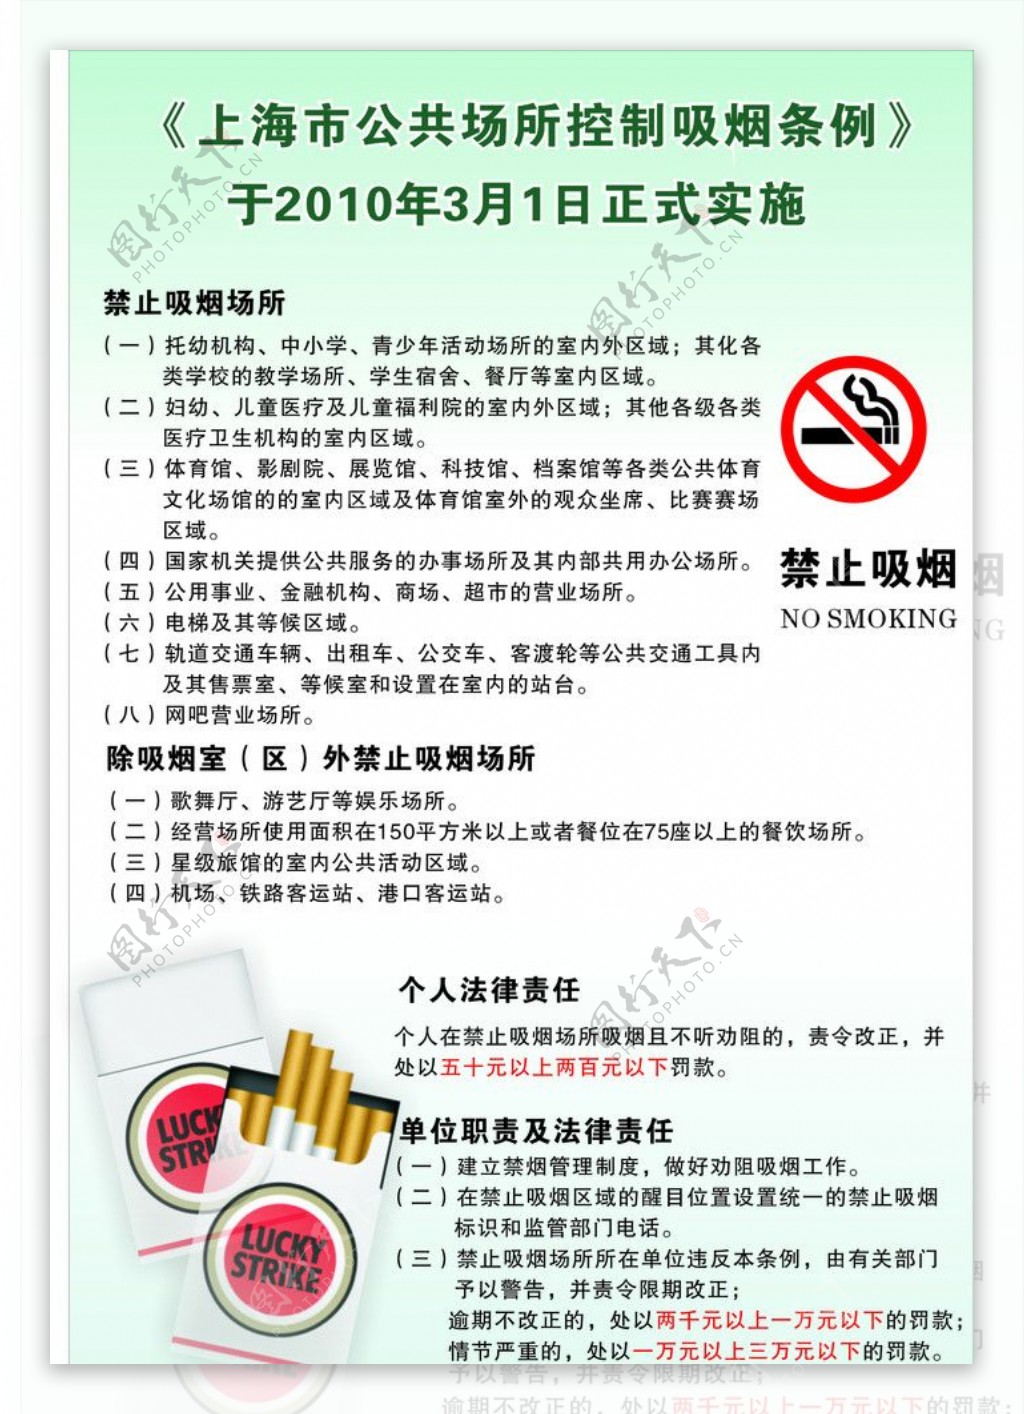 禁止吸烟条例上海禁止吸烟图片